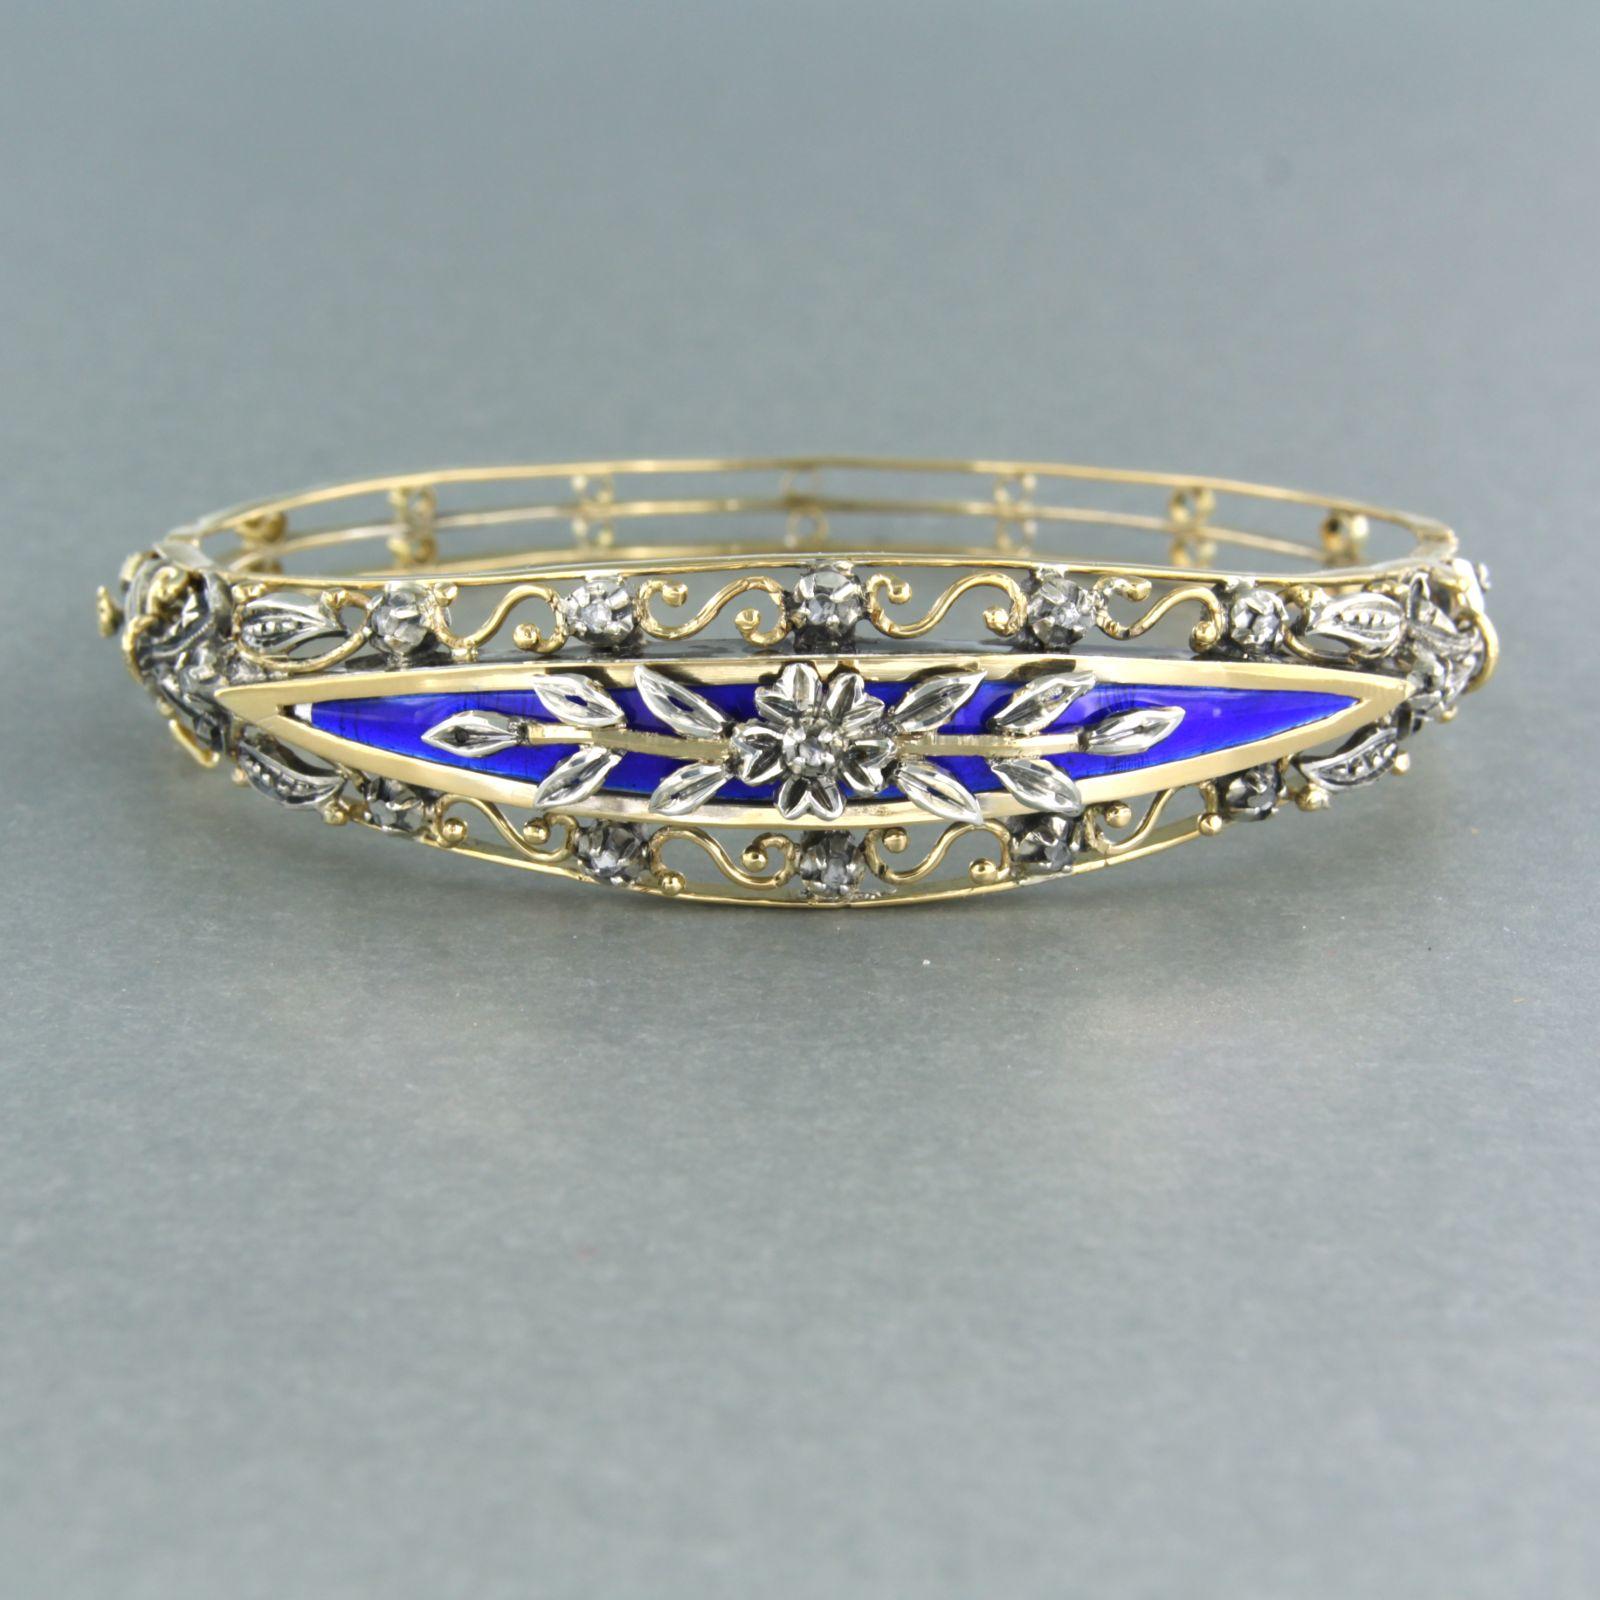 Bracelet en or jaune 18k avec décorations en argent et orné d'émail bleu serti de diamants roses sertis sur argent - dimensions intérieures 5,9 cm x 4,9 cm

description détaillée :

la taille intérieure du bracelet est de 5,9 cm sur 4,9 cm de